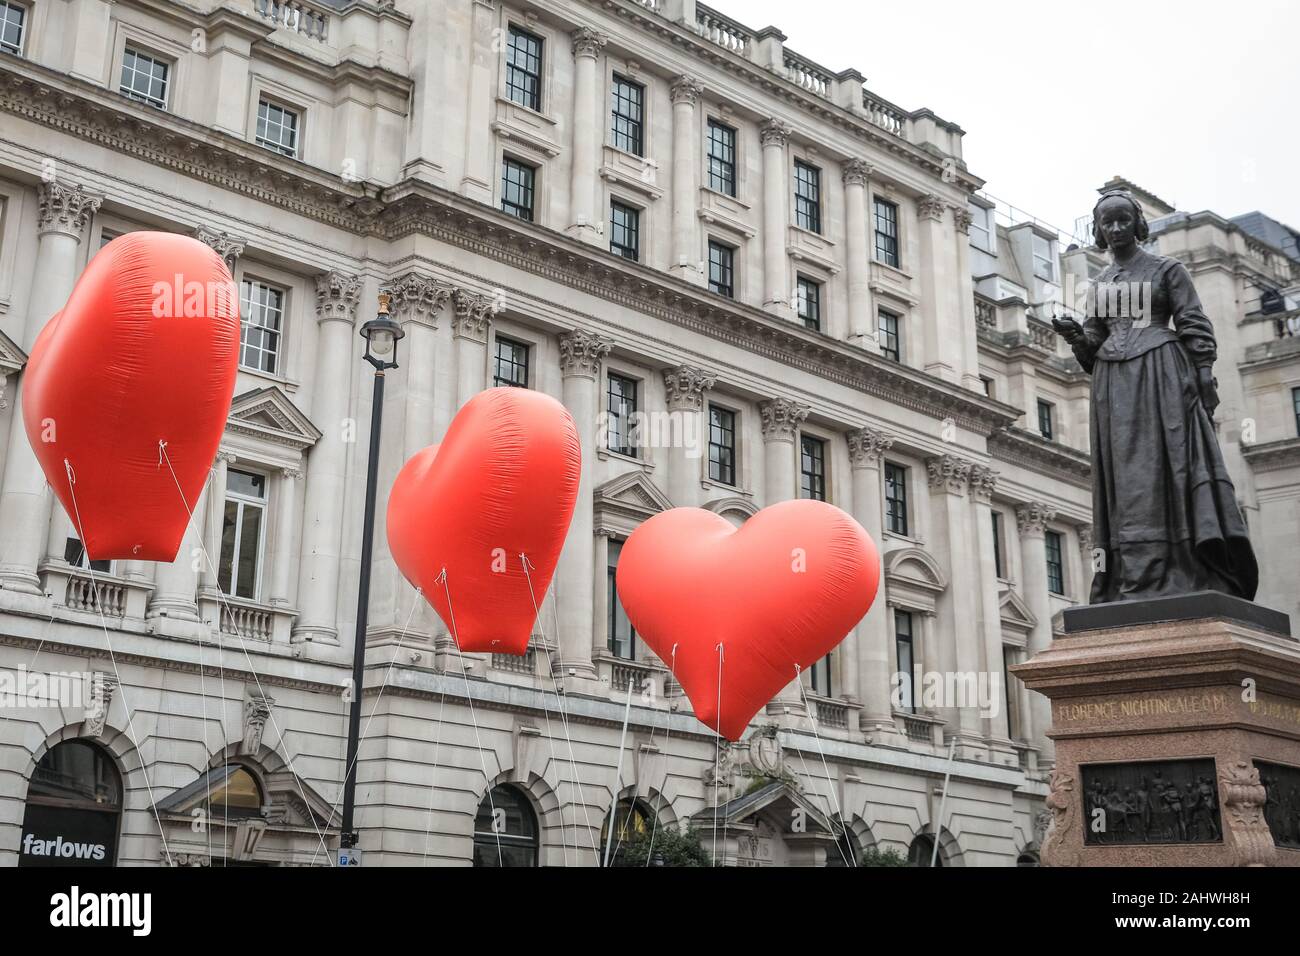 Londres, 1 ene 2020. Florence Nightingale se reúne el corazón de Londres. El tema de este año es "London ama la vida" y los grandes corazones inflables llevada a lo largo de la ruta reflejar el tema maravillosamente. Anillos de Londres en 2020 con el "London anual del año nuevo Day Parade", cariñosamente conocido por los londinenses como LNYDP, y sus espectaculares actuaciones a lo largo de una ruta a través del centro de Londres. Crédito: Imageplotter/Alamy Live News Foto de stock